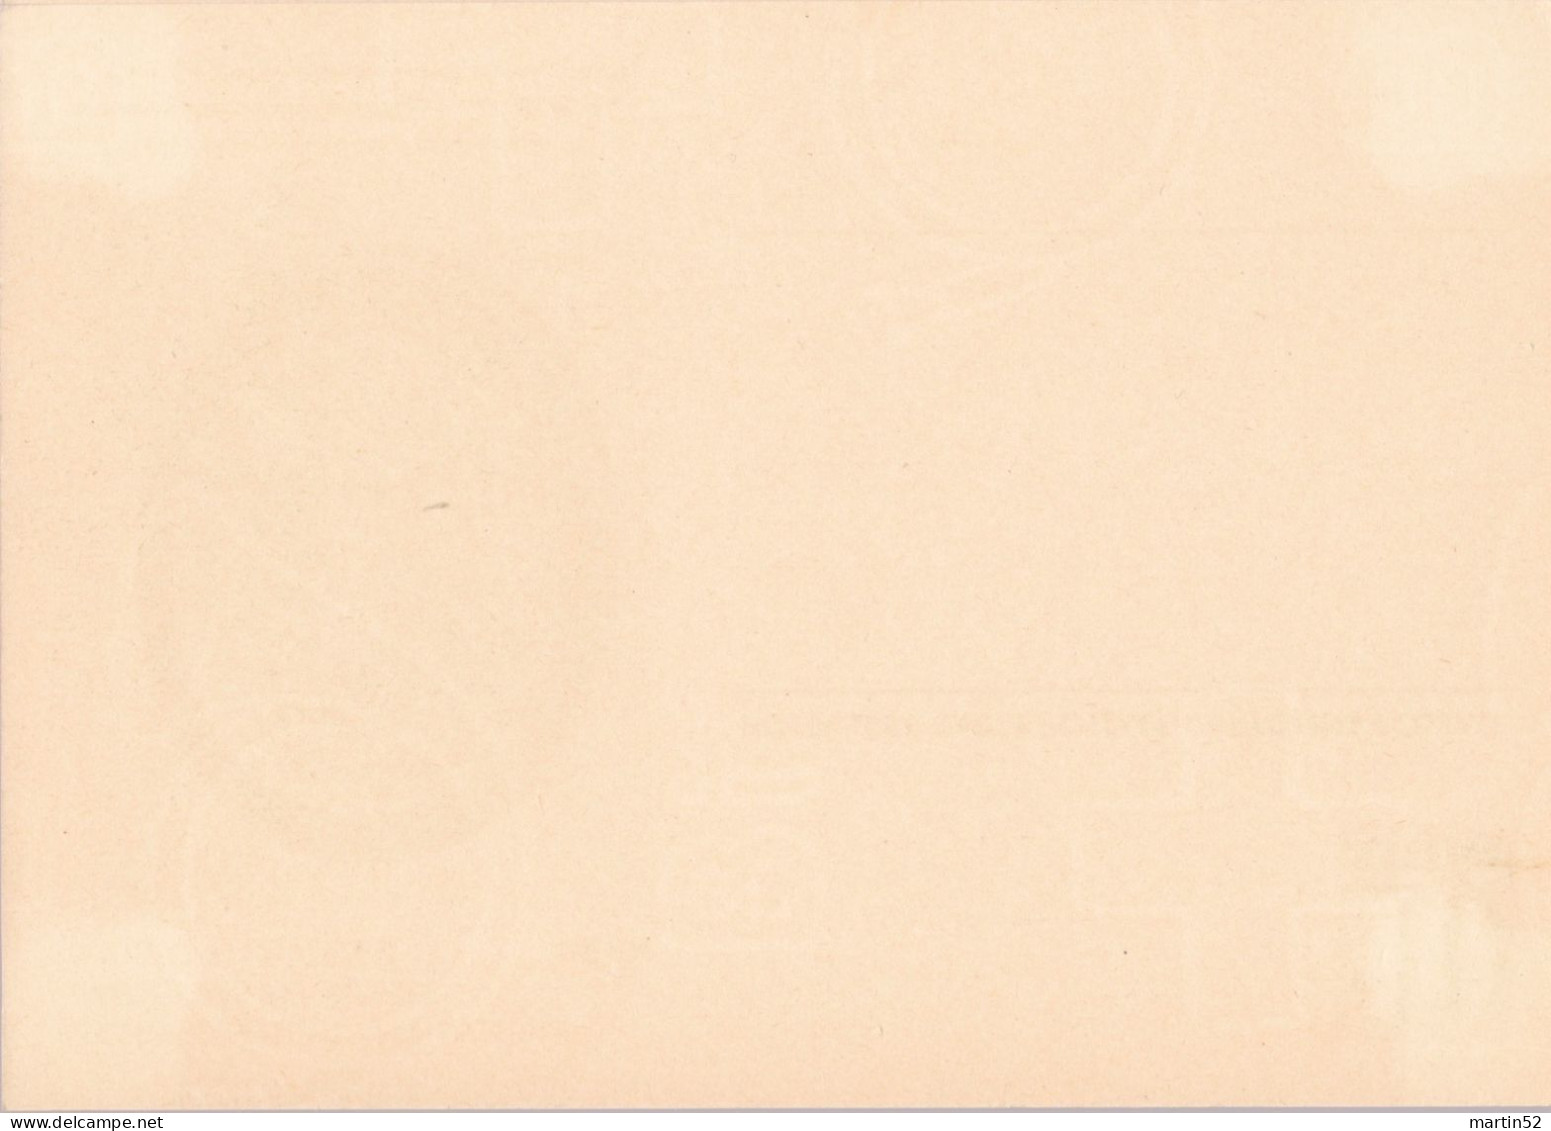 Schweiz Suisse 1950: Bild-PK POSTMUSEUM CPI MUSÉE POSTALE Zumstein-N° 183 A TELEGRAPHIE 1868 Ungelaufen / Non Circulé - Telegraafzegels